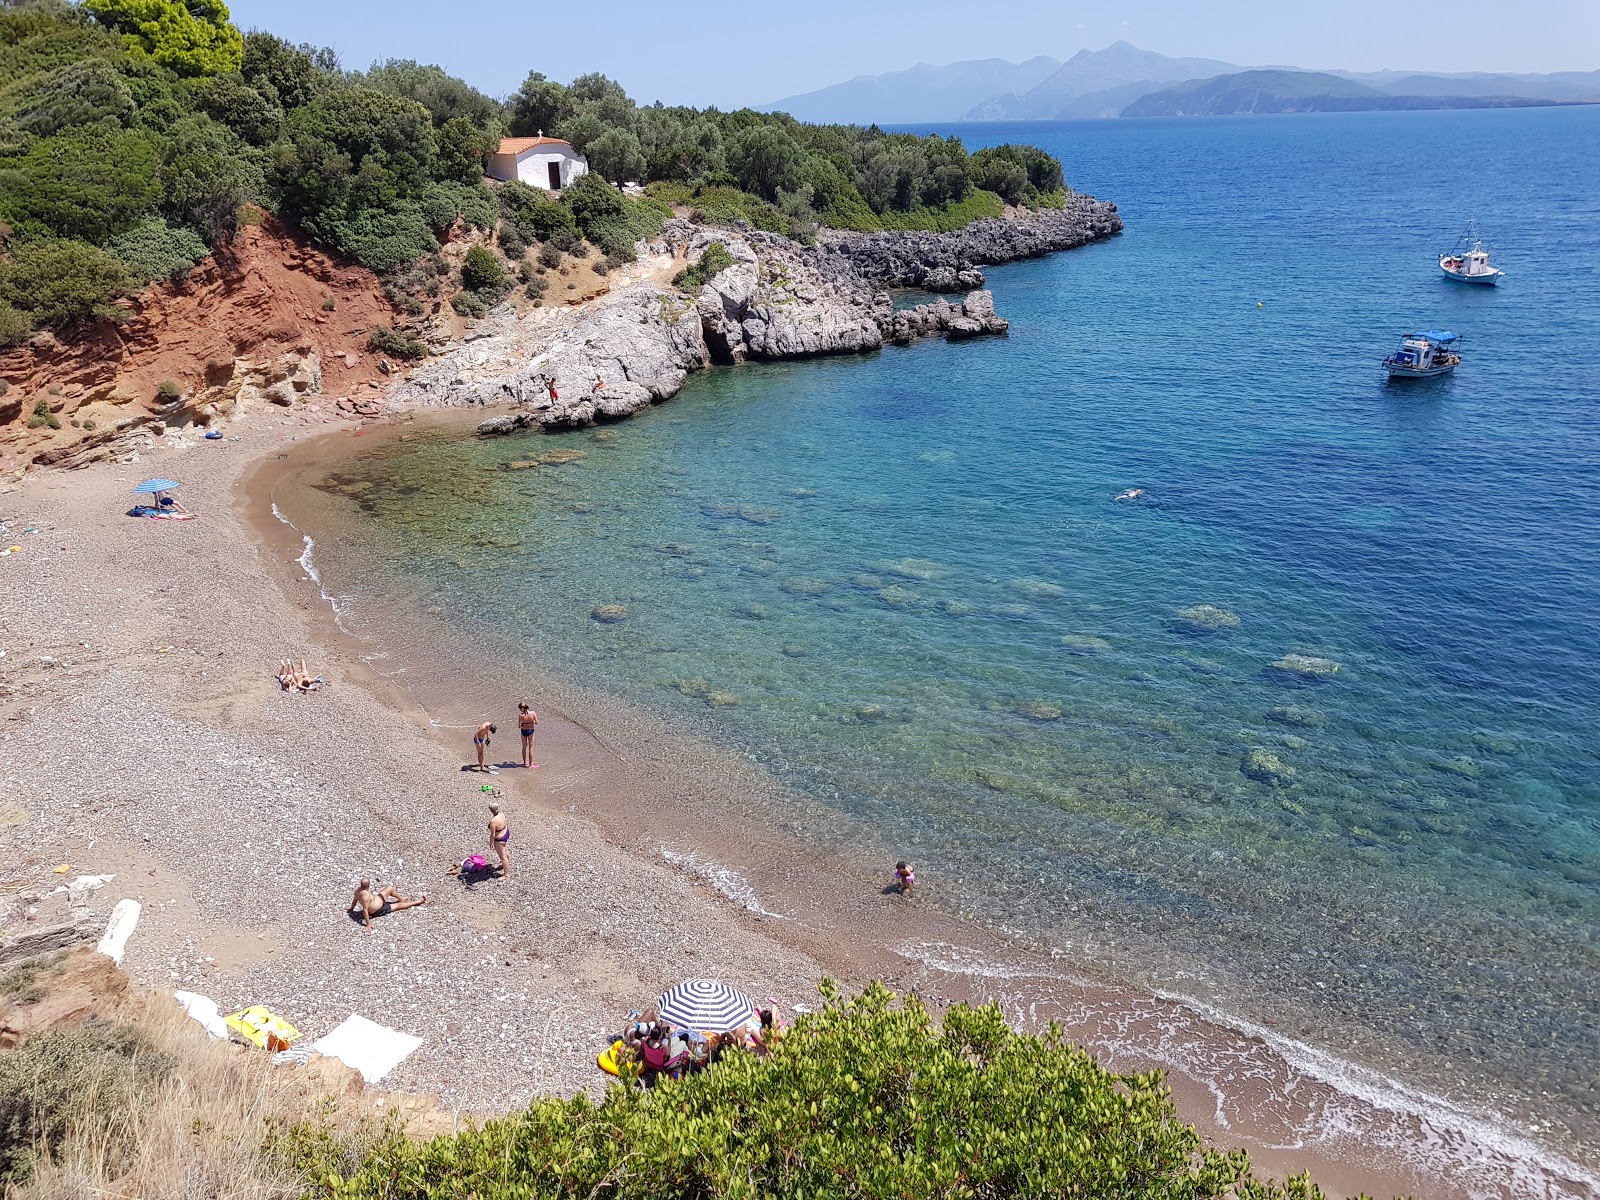 Agios Vasilis beach'in fotoğrafı koyu i̇nce çakıl yüzey ile